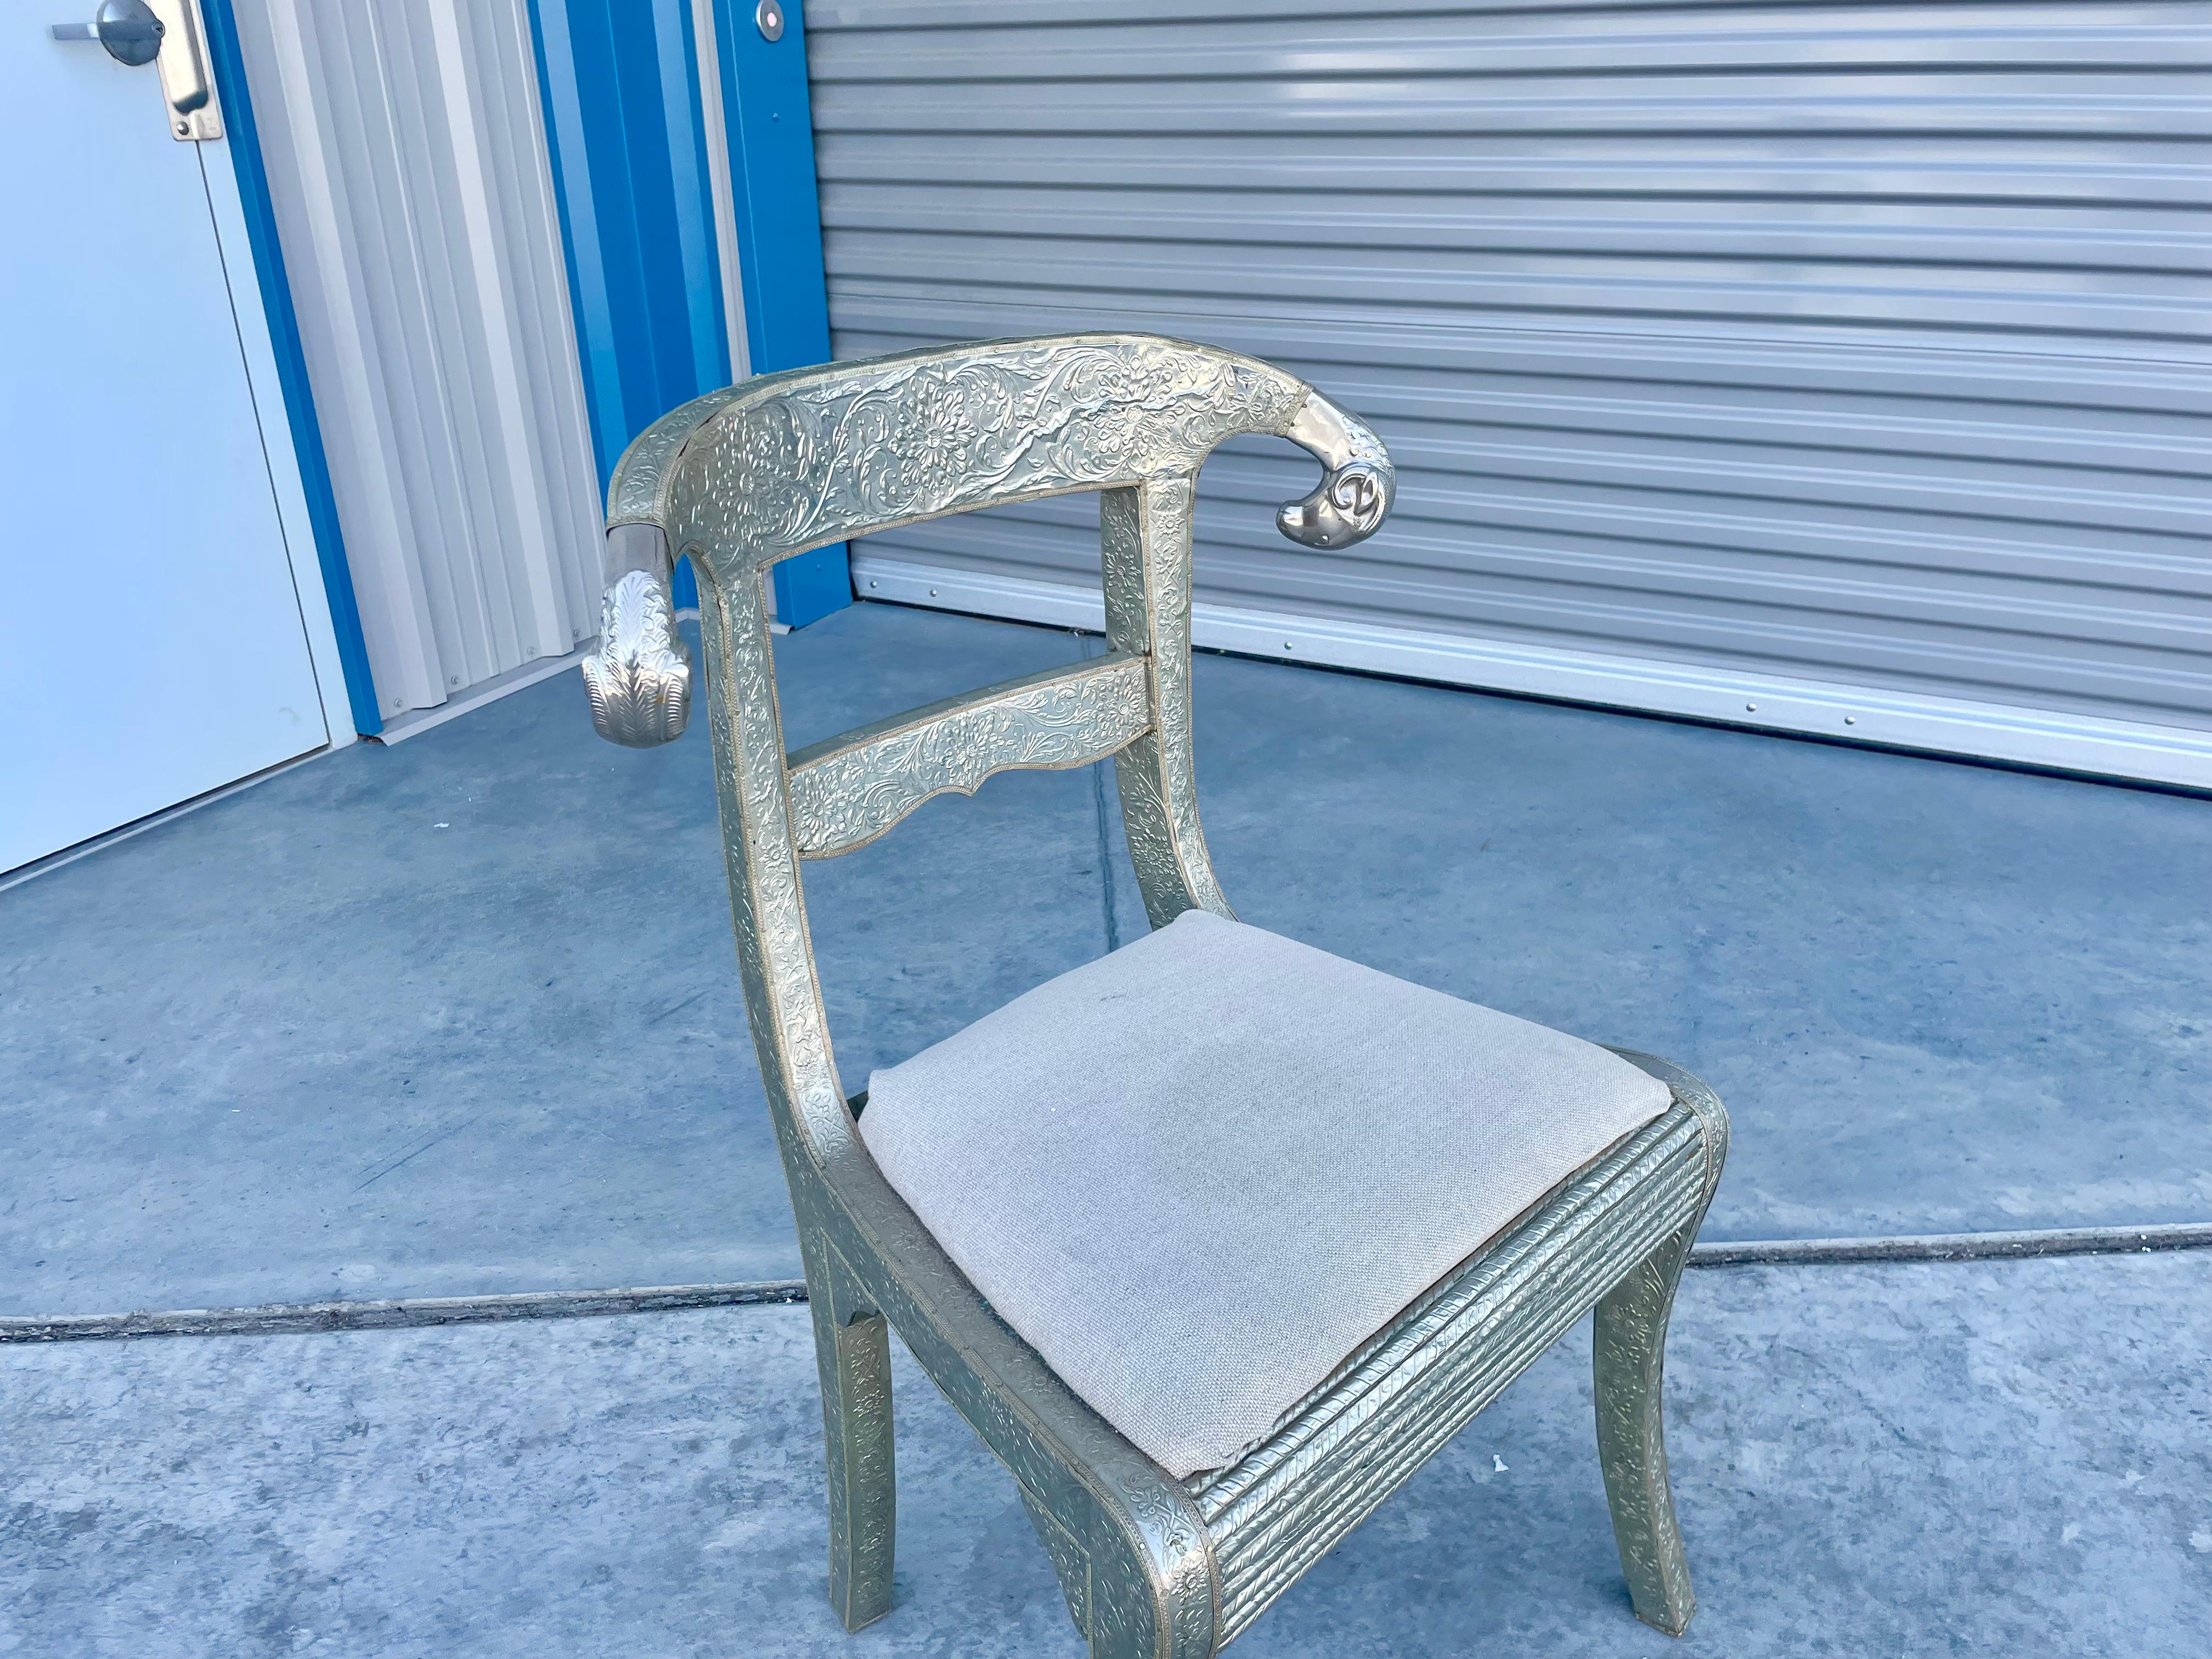 Chaise bélier vintage enveloppée de métal, conçue et fabriquée en Inde vers les années 1980. Cette belle chaise est également appelée chaise de mariage. Il présente un cadre en bois enveloppé de métal argenté et des têtes de bélier polies sur les